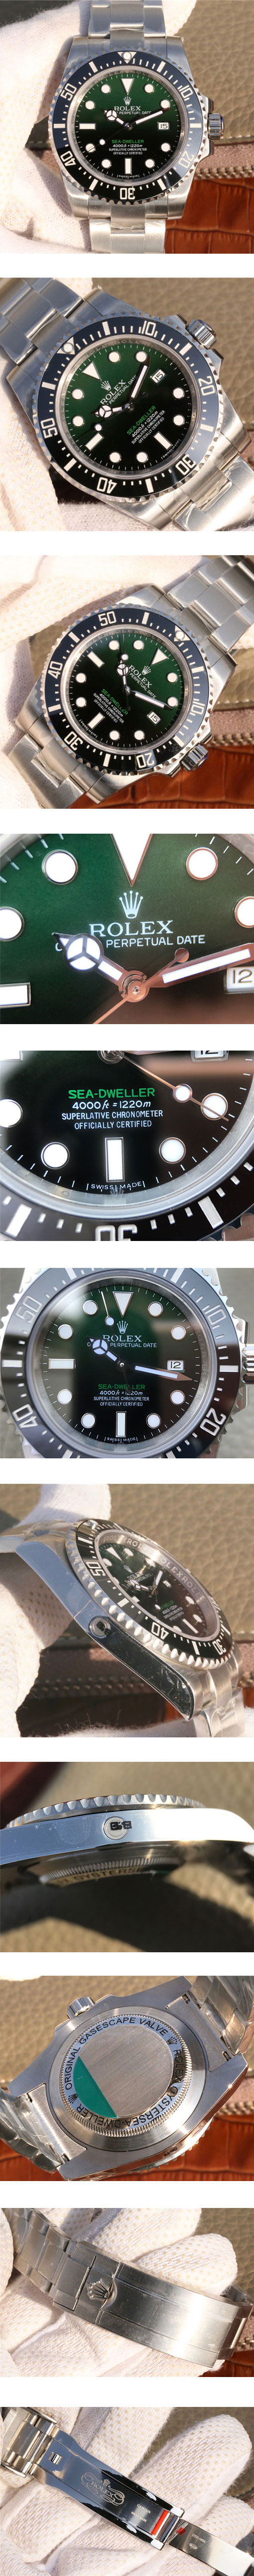 ブランド時計コピーロレックス シードゥエラー時計を見る必要がありますか？ 44mm グリーン 2836ムーブメント搭載